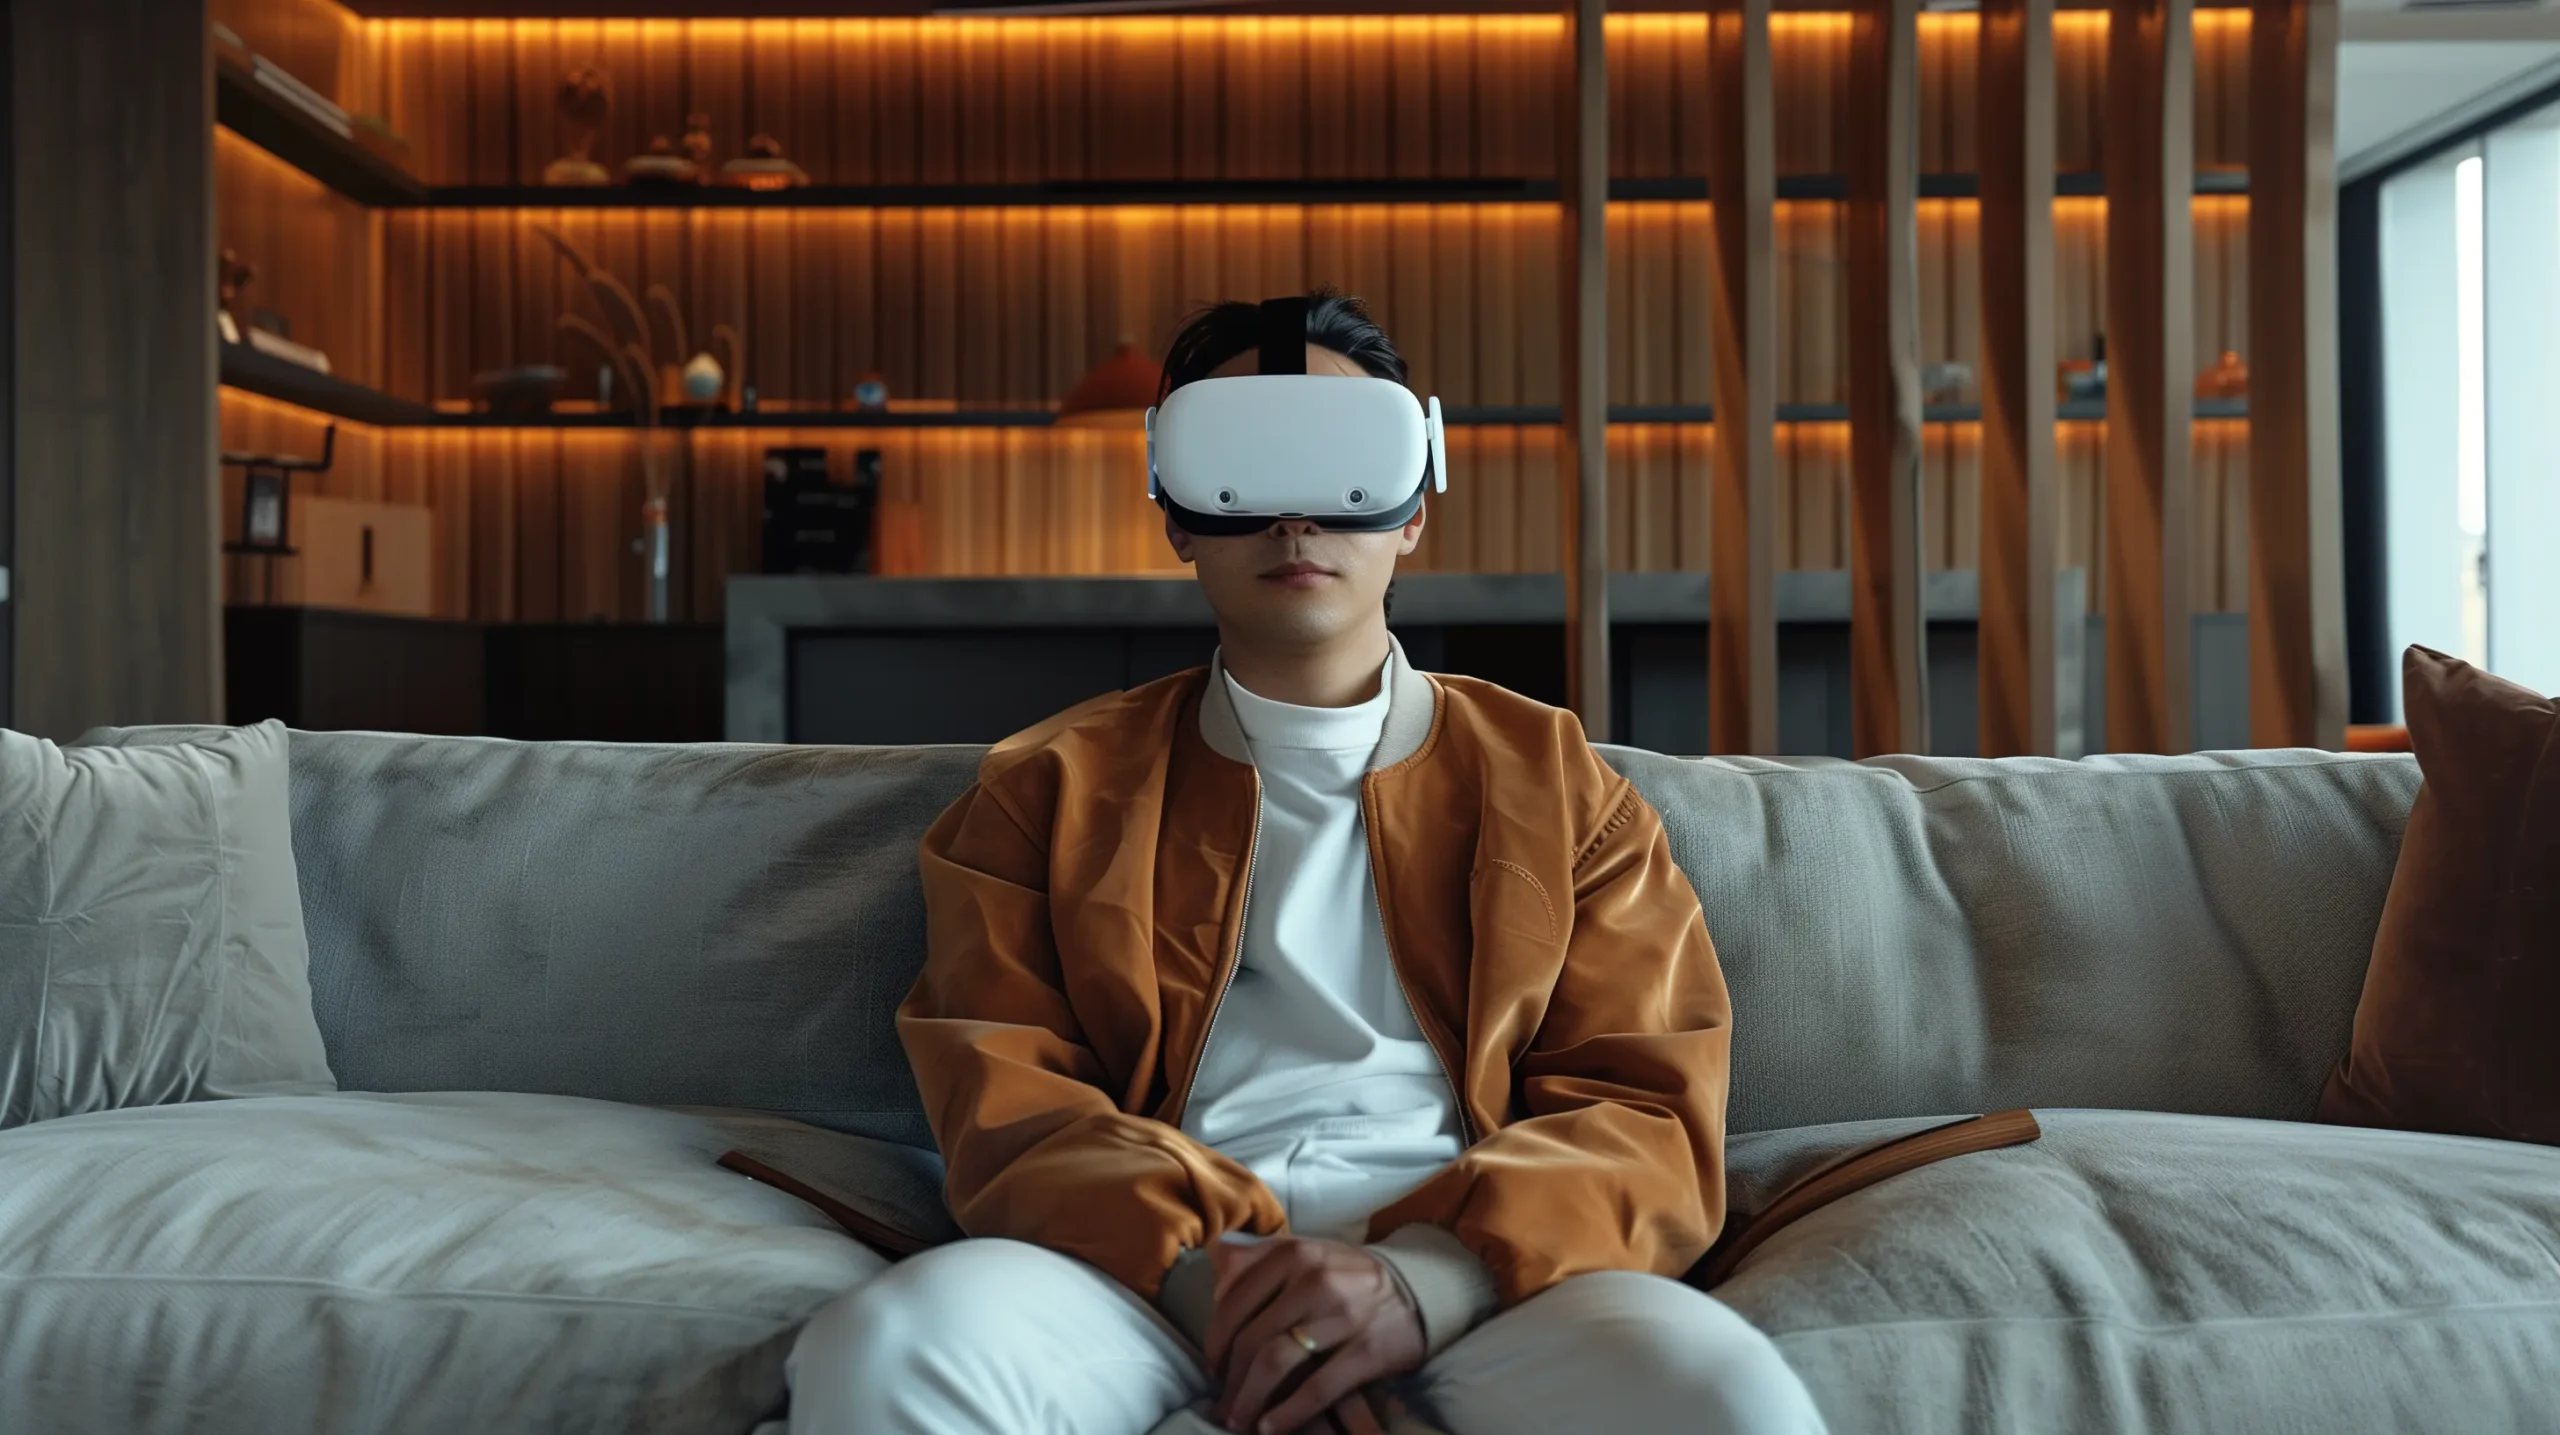 Ein junger Mann mit einer Lederjacke sitzt auf einem Sofa in einem sehr modernen Wohnzimmer sitzt und eine VR Brille trägt